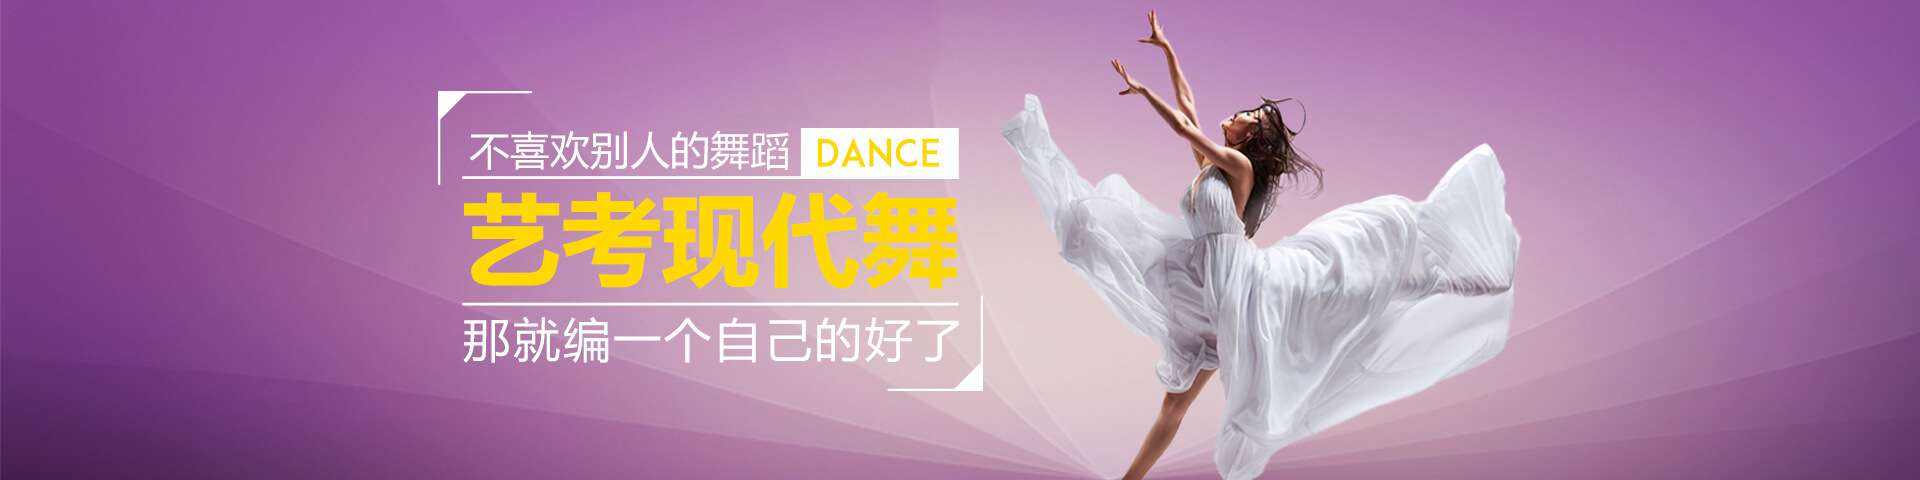 北京爵士舞专业培训班